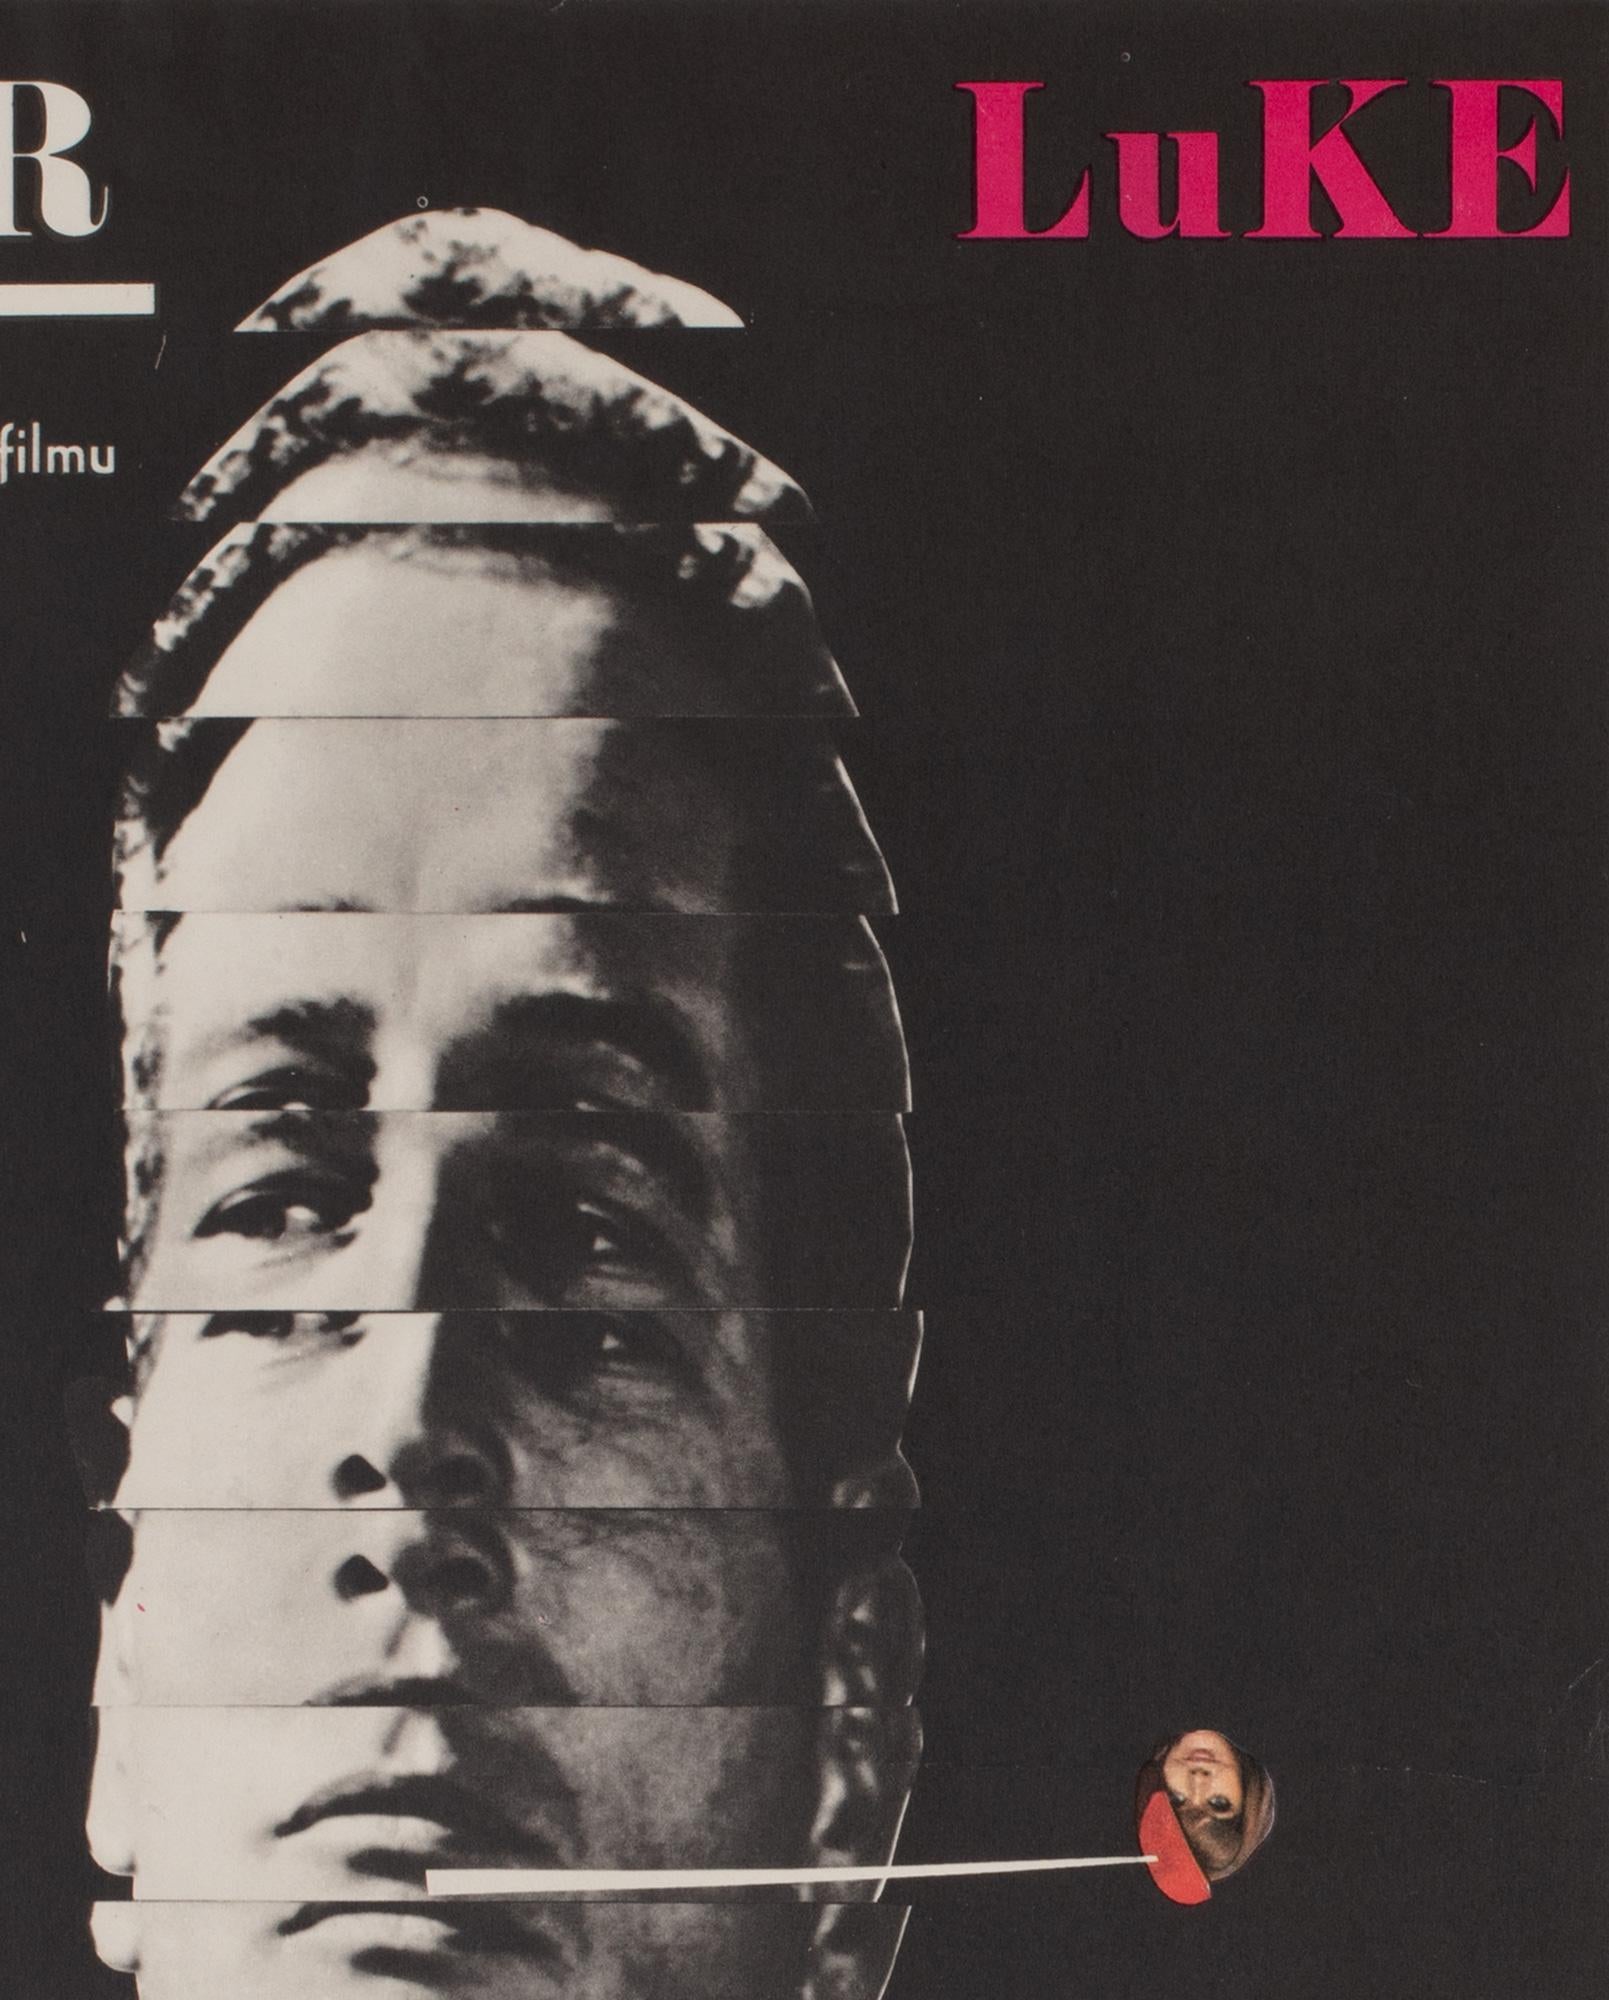 Paper Cool Hand Luke 1967, Czech A3 Film Movie Poster, Grygar